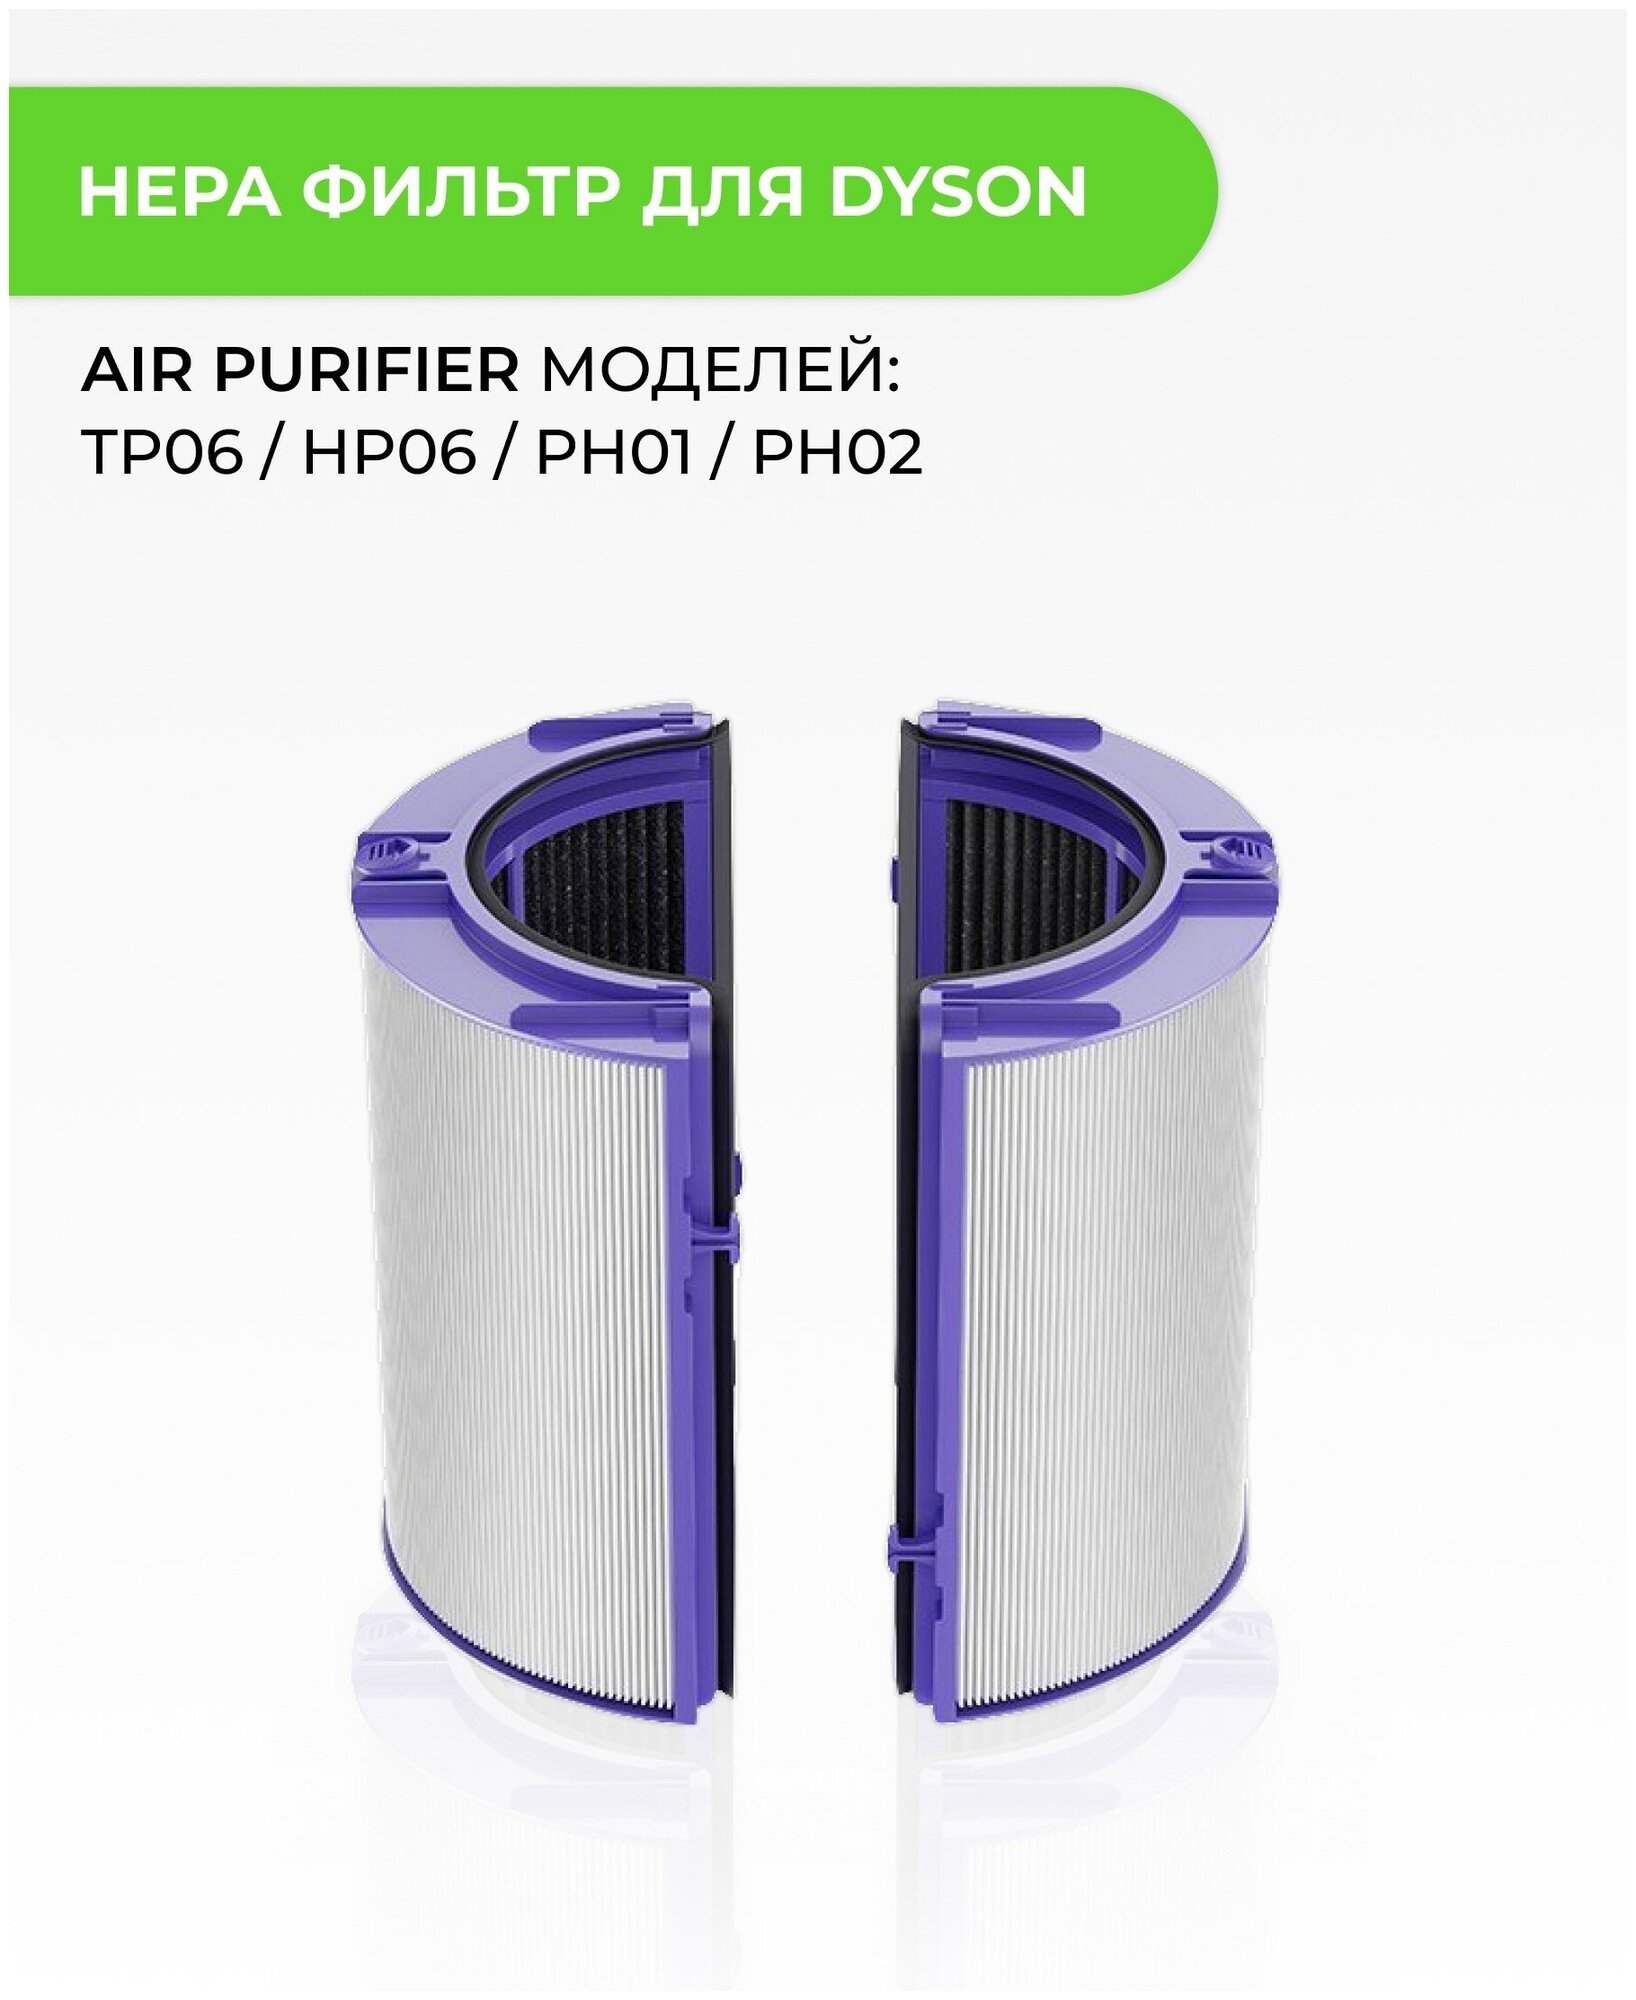 Комплект фильтров ABC для воздухоочистителя DYSON Air Purifier